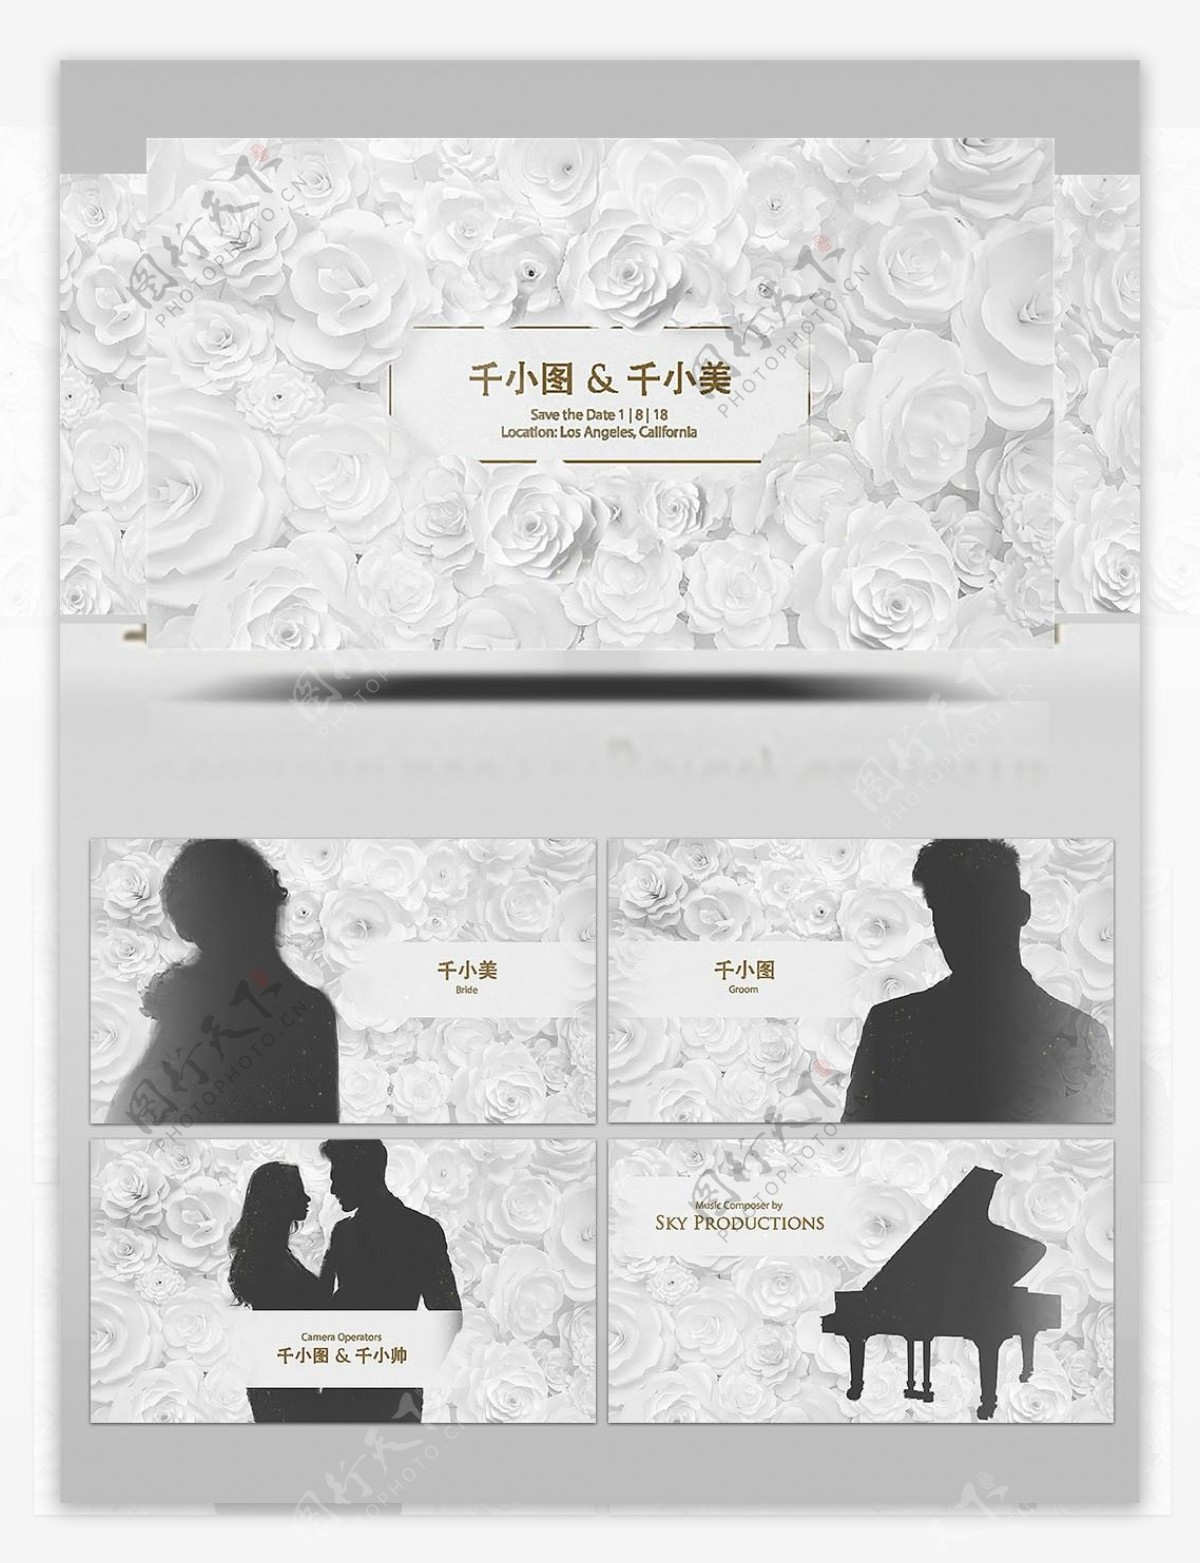 圣洁白色玫瑰主题的婚礼整体包装AE模板